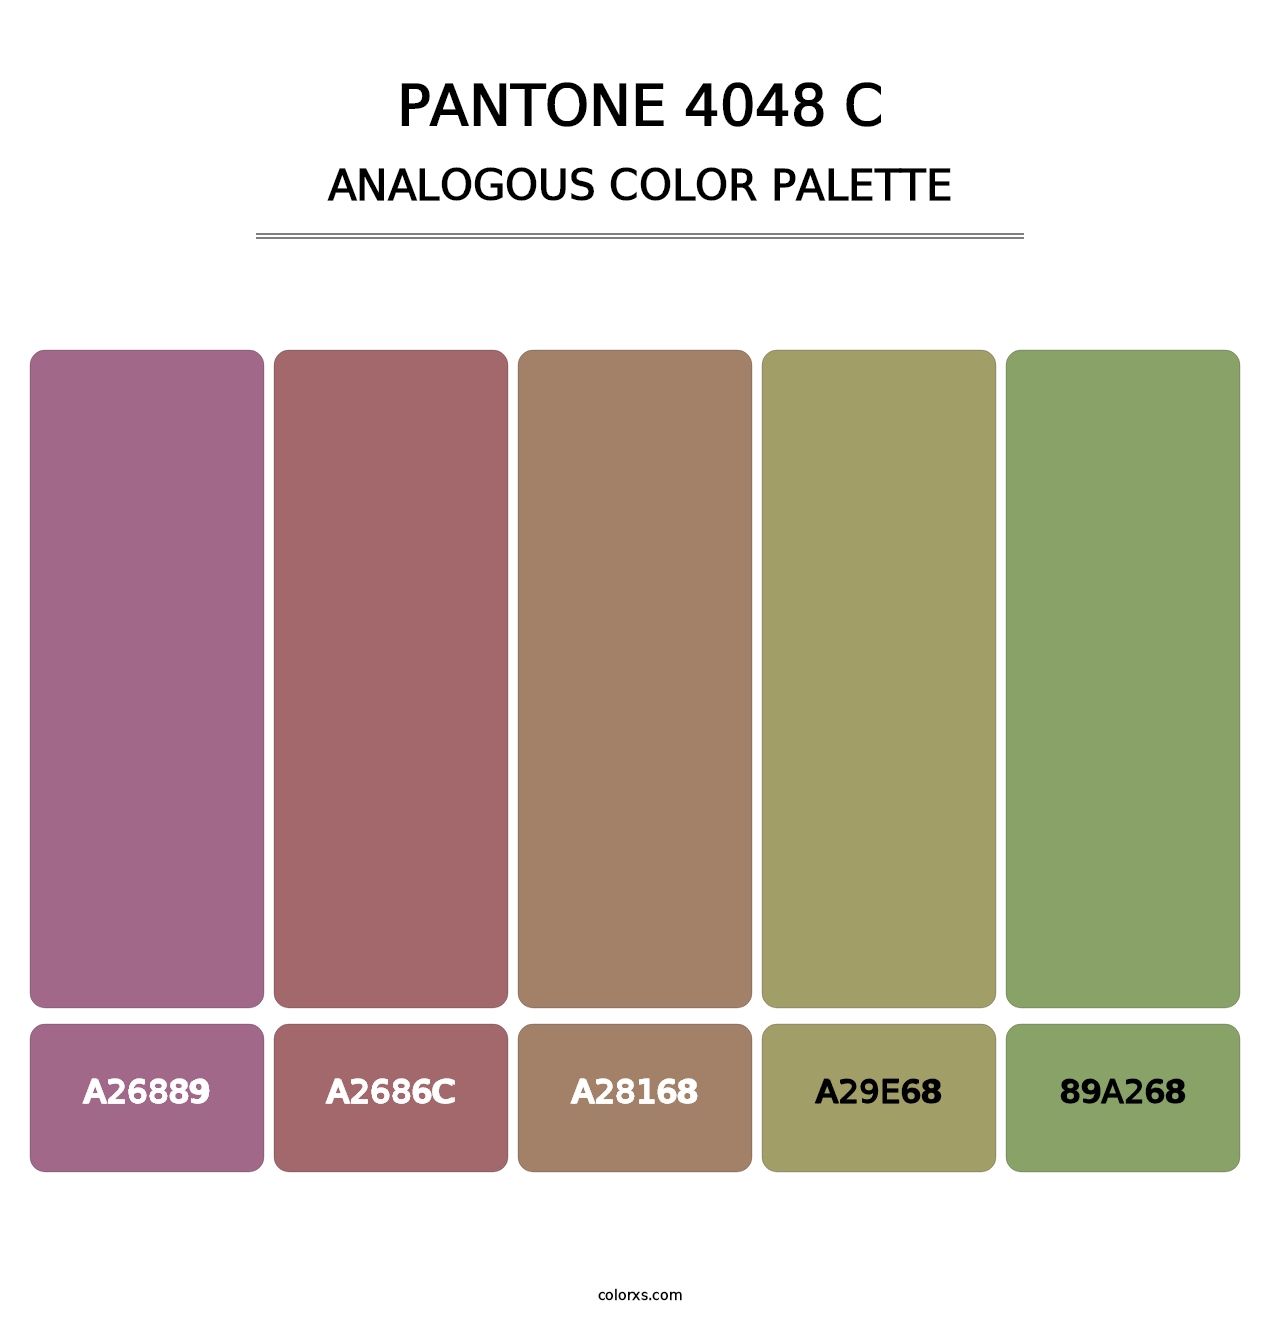 PANTONE 4048 C - Analogous Color Palette